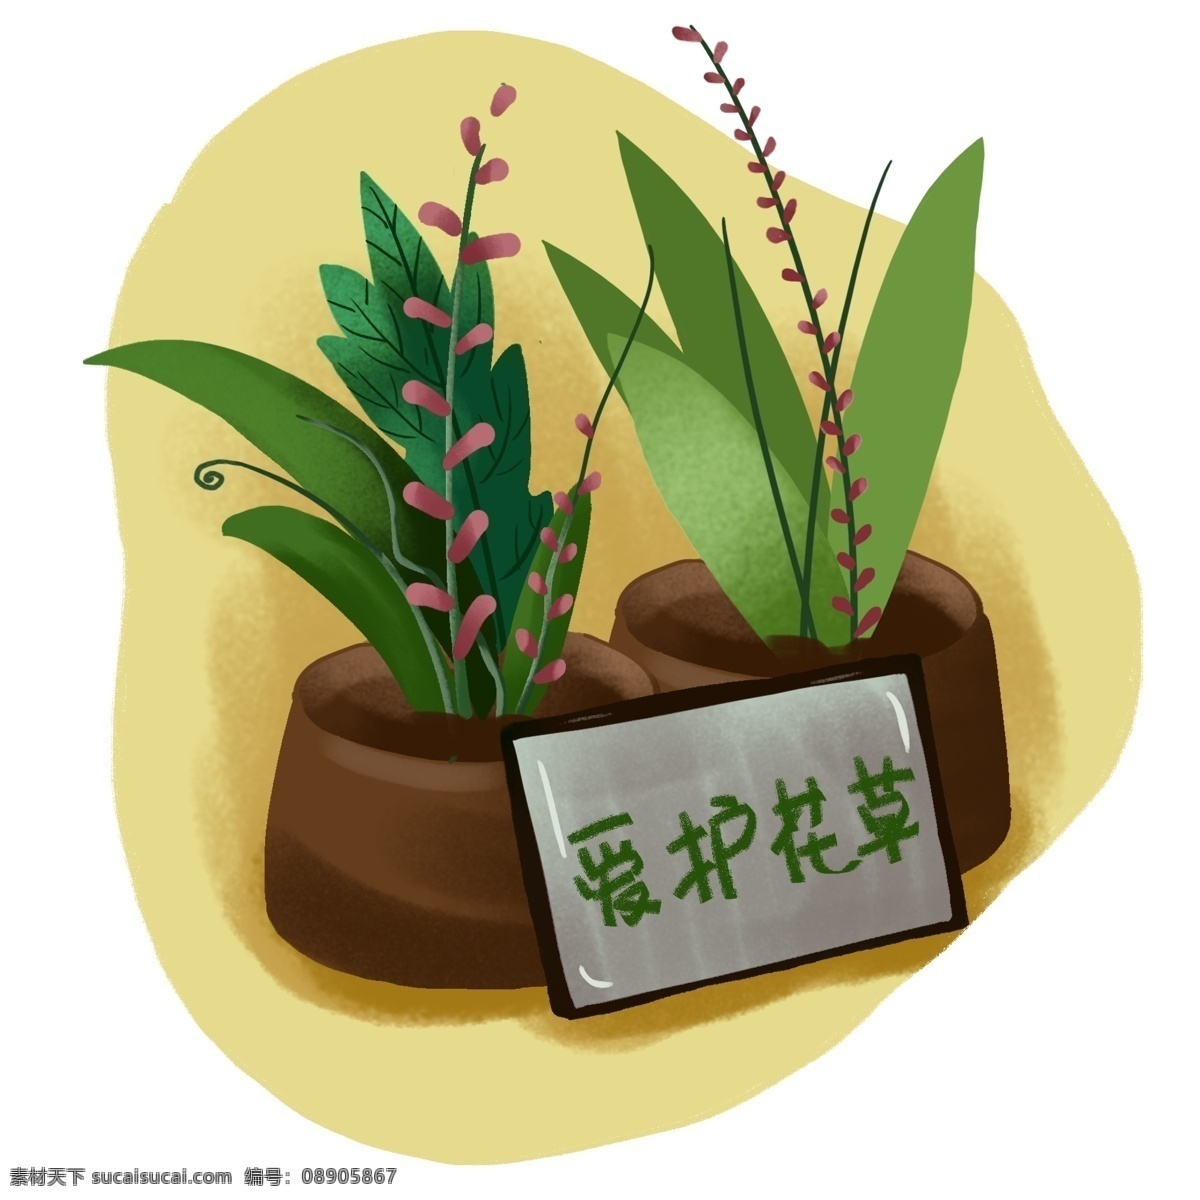 爱护 花草 提示牌 手绘 元素 花盆 养花 爱花 自然 绿色 生命 植物 提示 责任 公德心